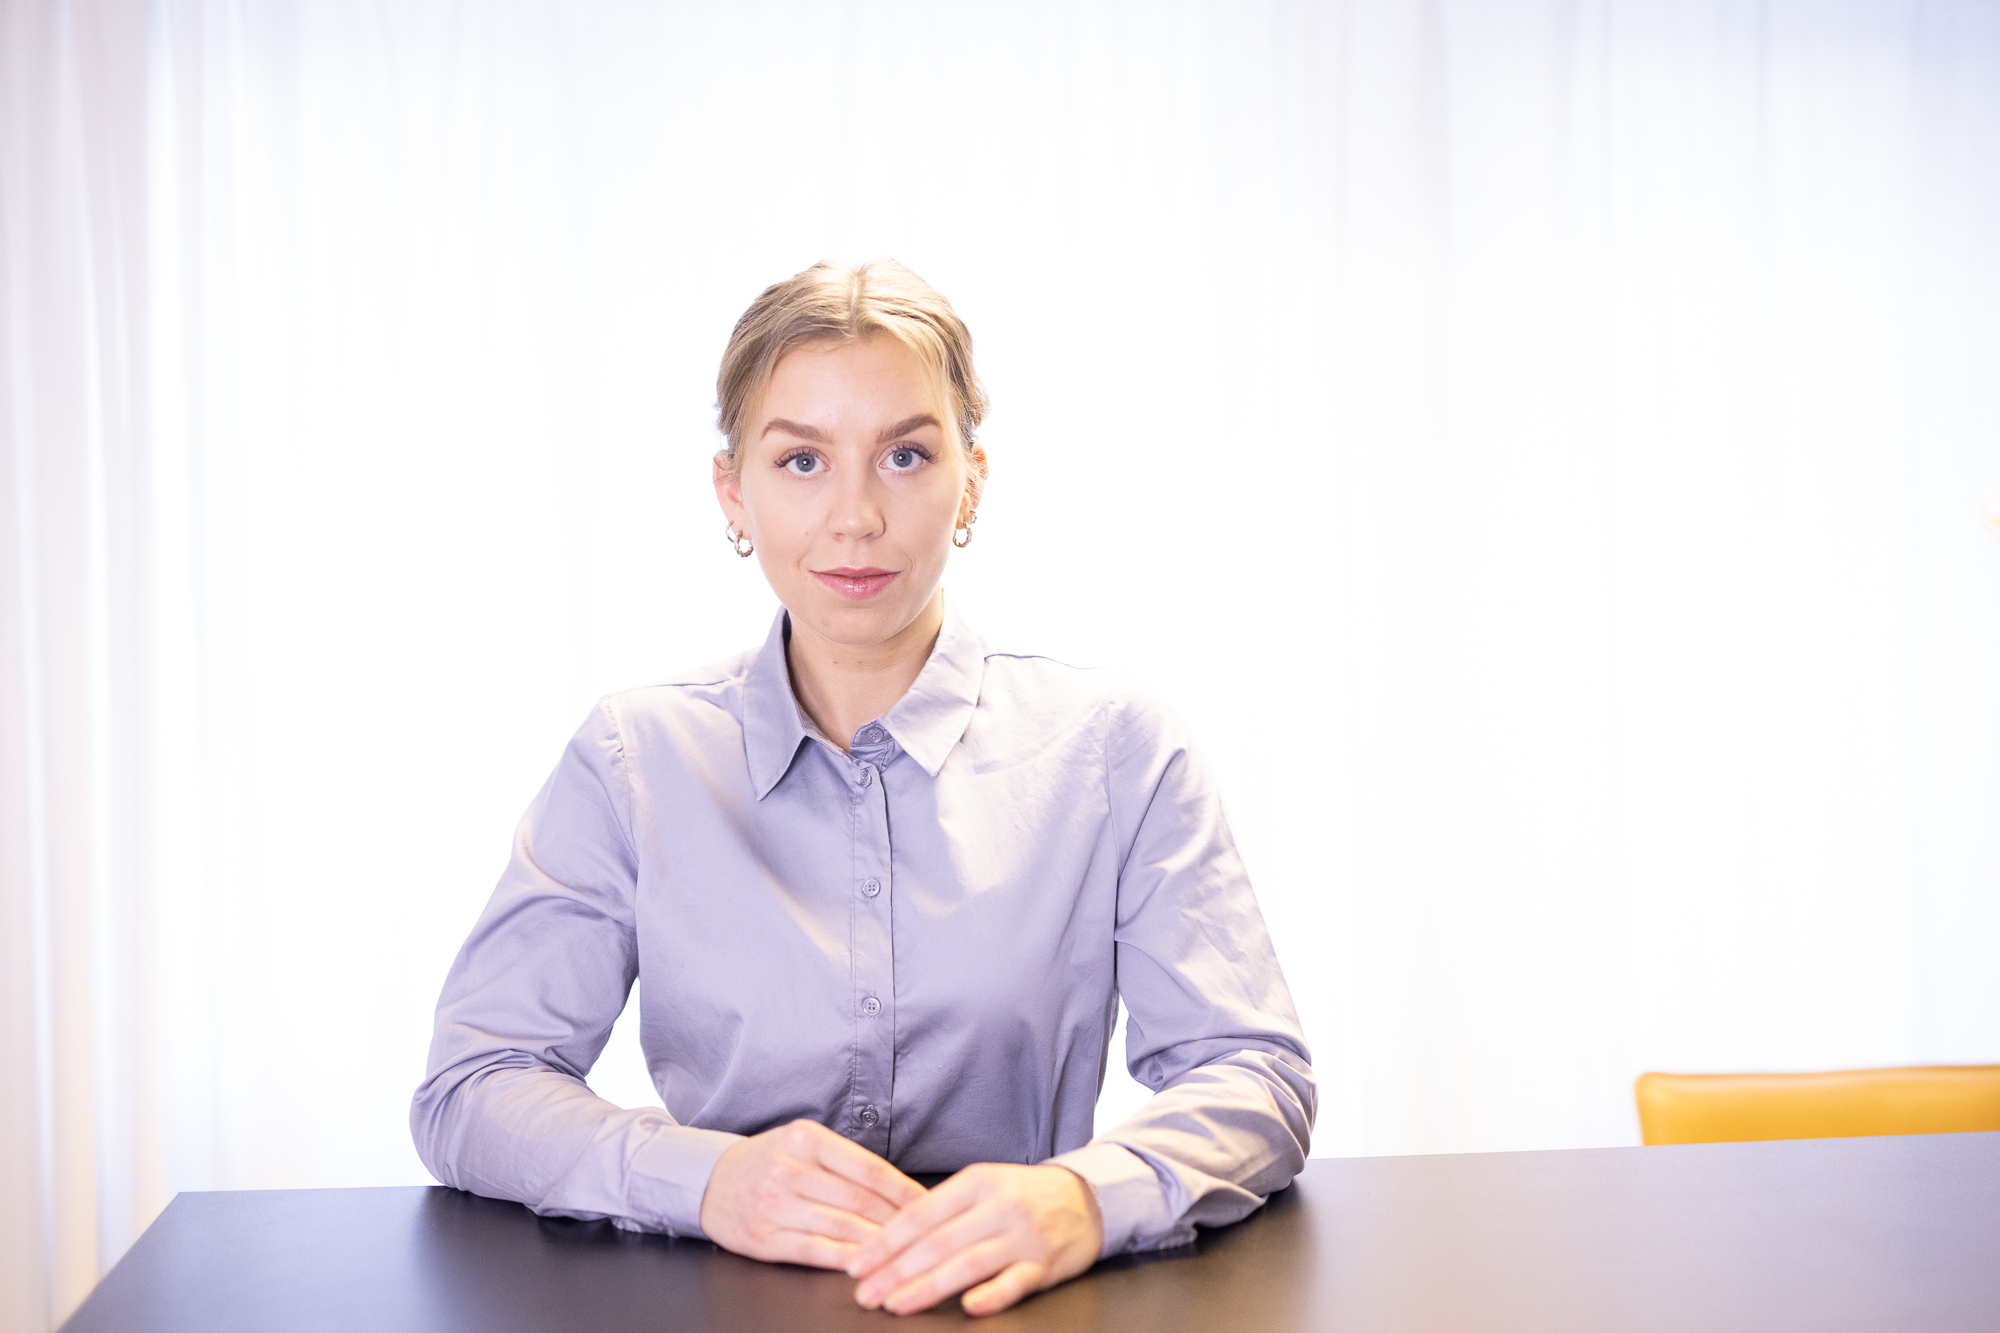 Porträttfoto av Isabelle Gunnarsson, en erfaren jurist vid vår juristbyrå i Malmö. Isabelle har specialiserat sig inom humanjuridik och har gedigen erfarenhet av att hantera komplexa ärenden som rör brottsoffer som utsatts för våldtäkt.